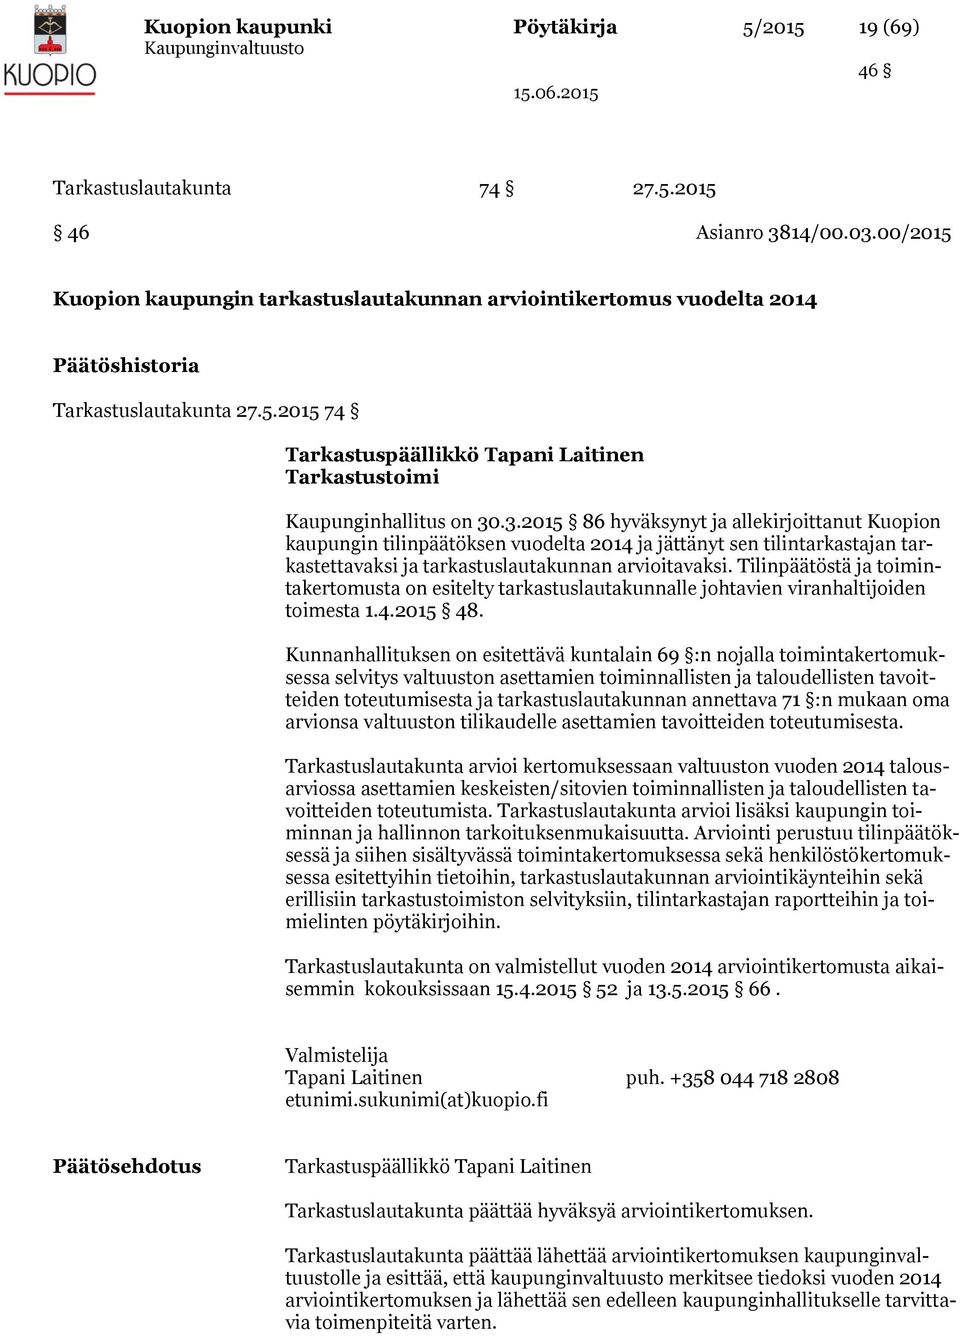 .3.2015 86 hyväksynyt ja allekirjoittanut Kuopion kaupungin tilinpäätöksen vuodelta 2014 ja jättänyt sen tilintarkastajan tarkastettavaksi ja tarkastuslautakunnan arvioitavaksi.